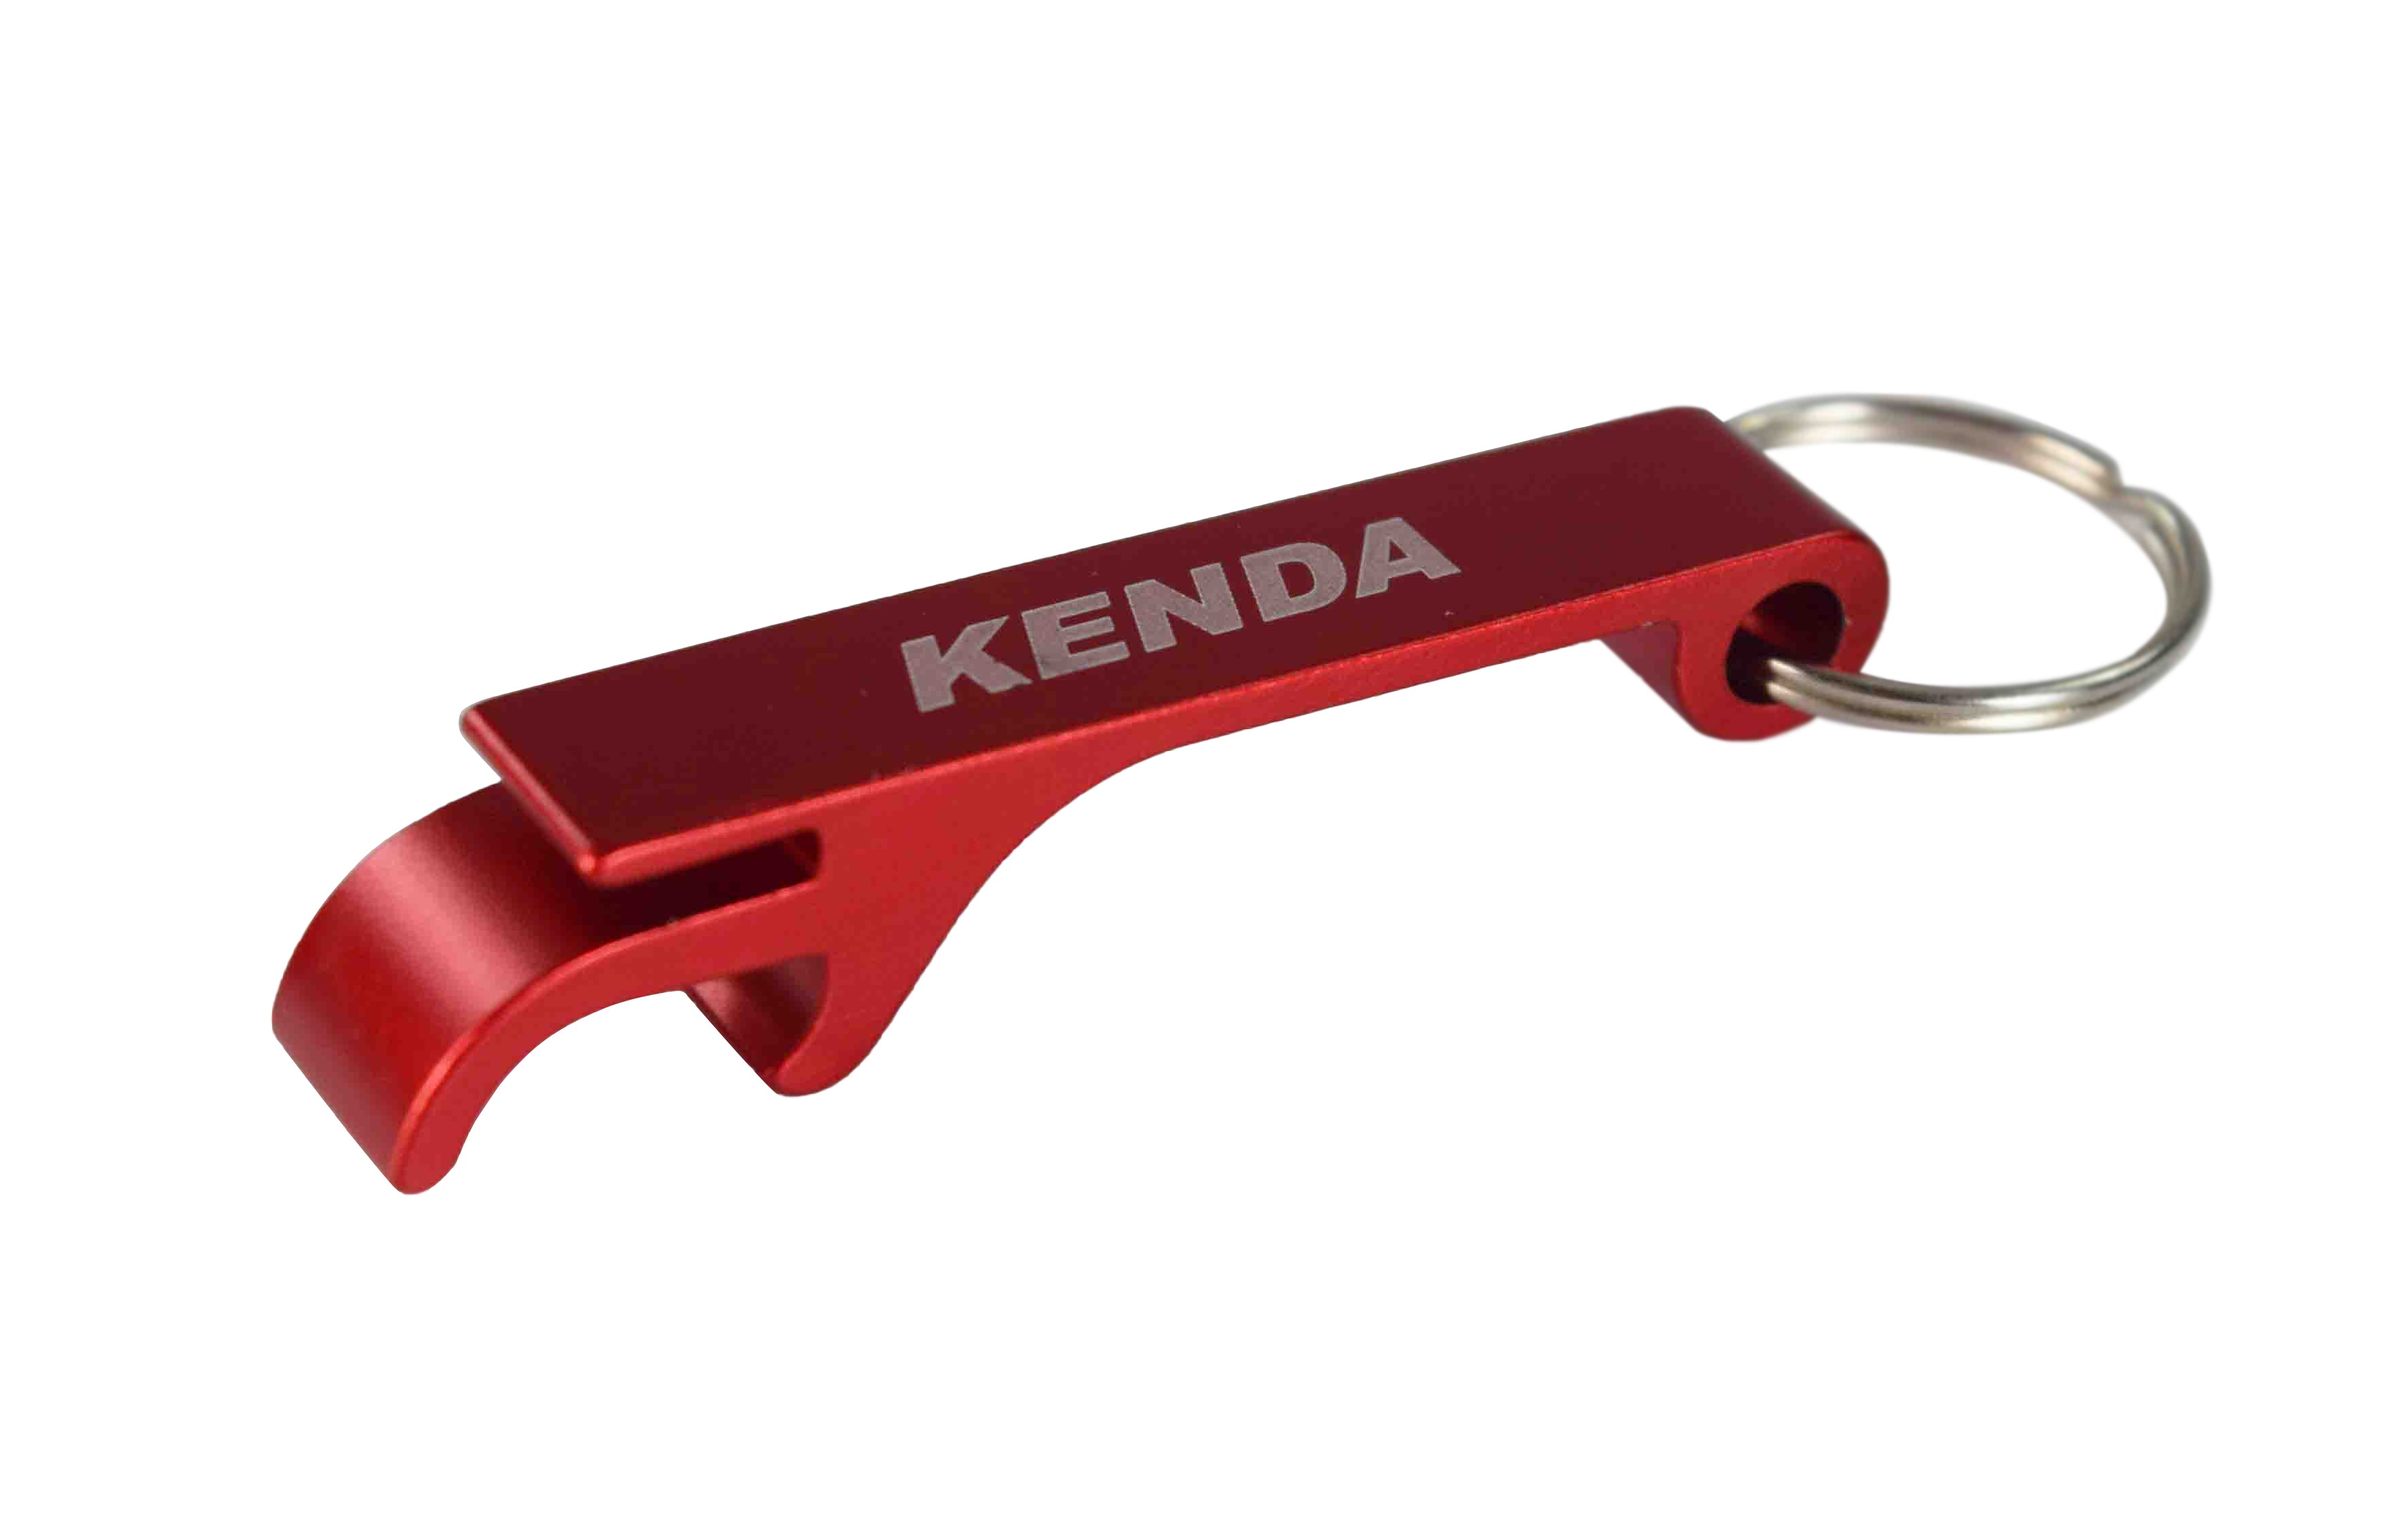 Kenda 234A1044 205/65-10 Load Star 4 Ply Tubeless Trailer Tire w Key Chain Bottle Opener